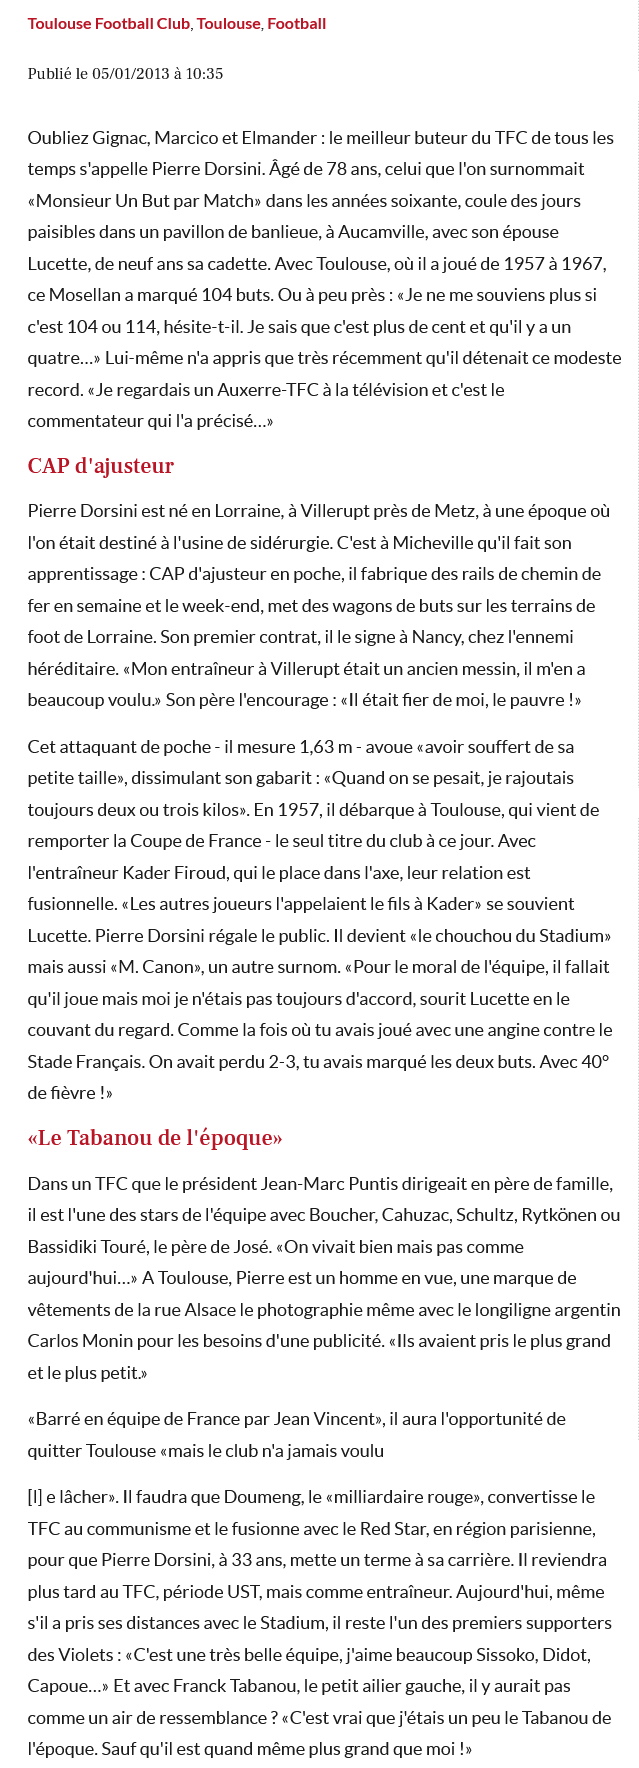 Toulouse. Pierre Dorsini le vrai canonnier du TFC.jpg